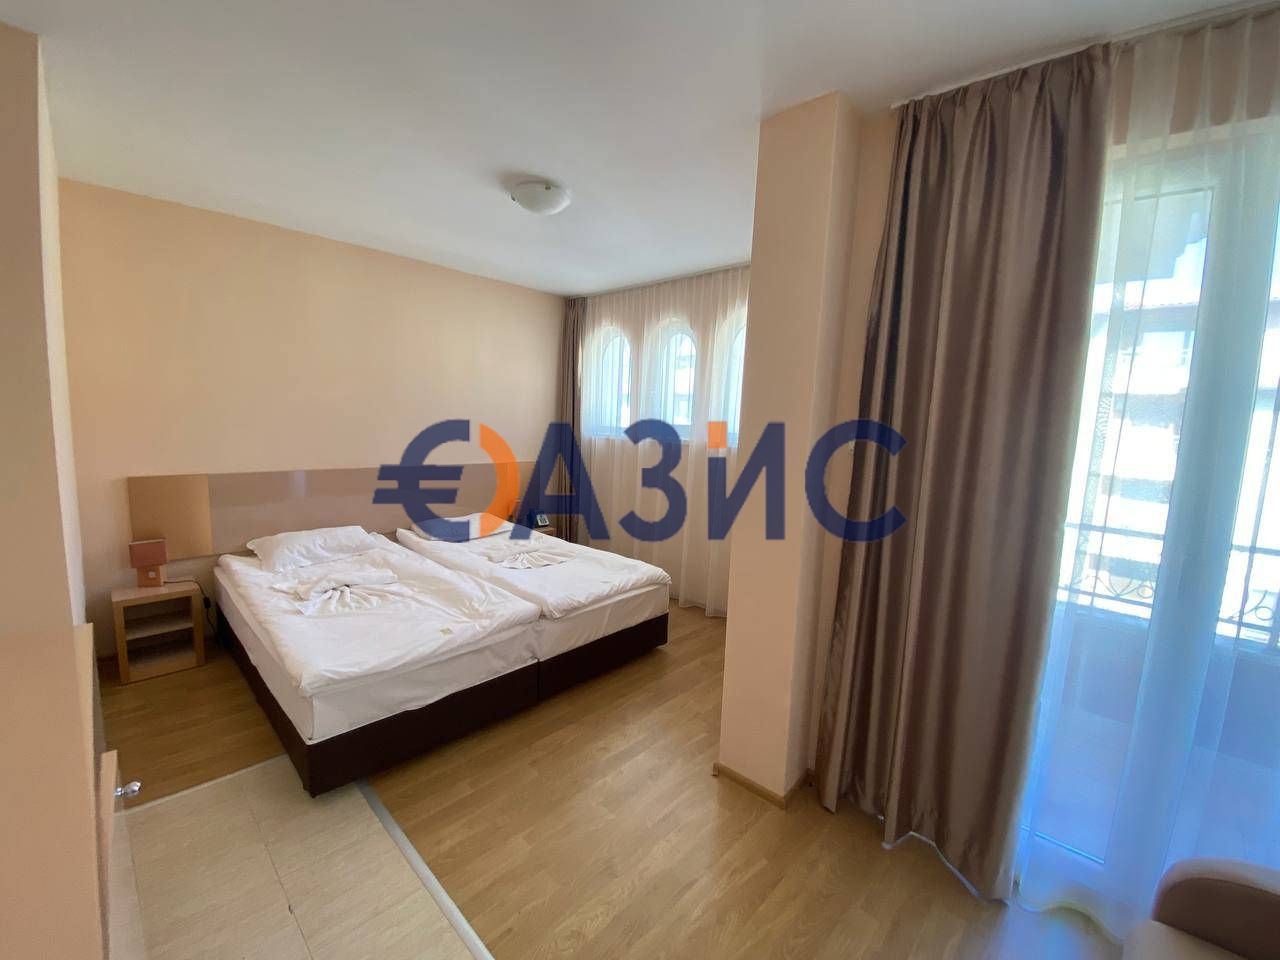 Apartment at Sunny Beach, Bulgaria, 36 sq.m - picture 1